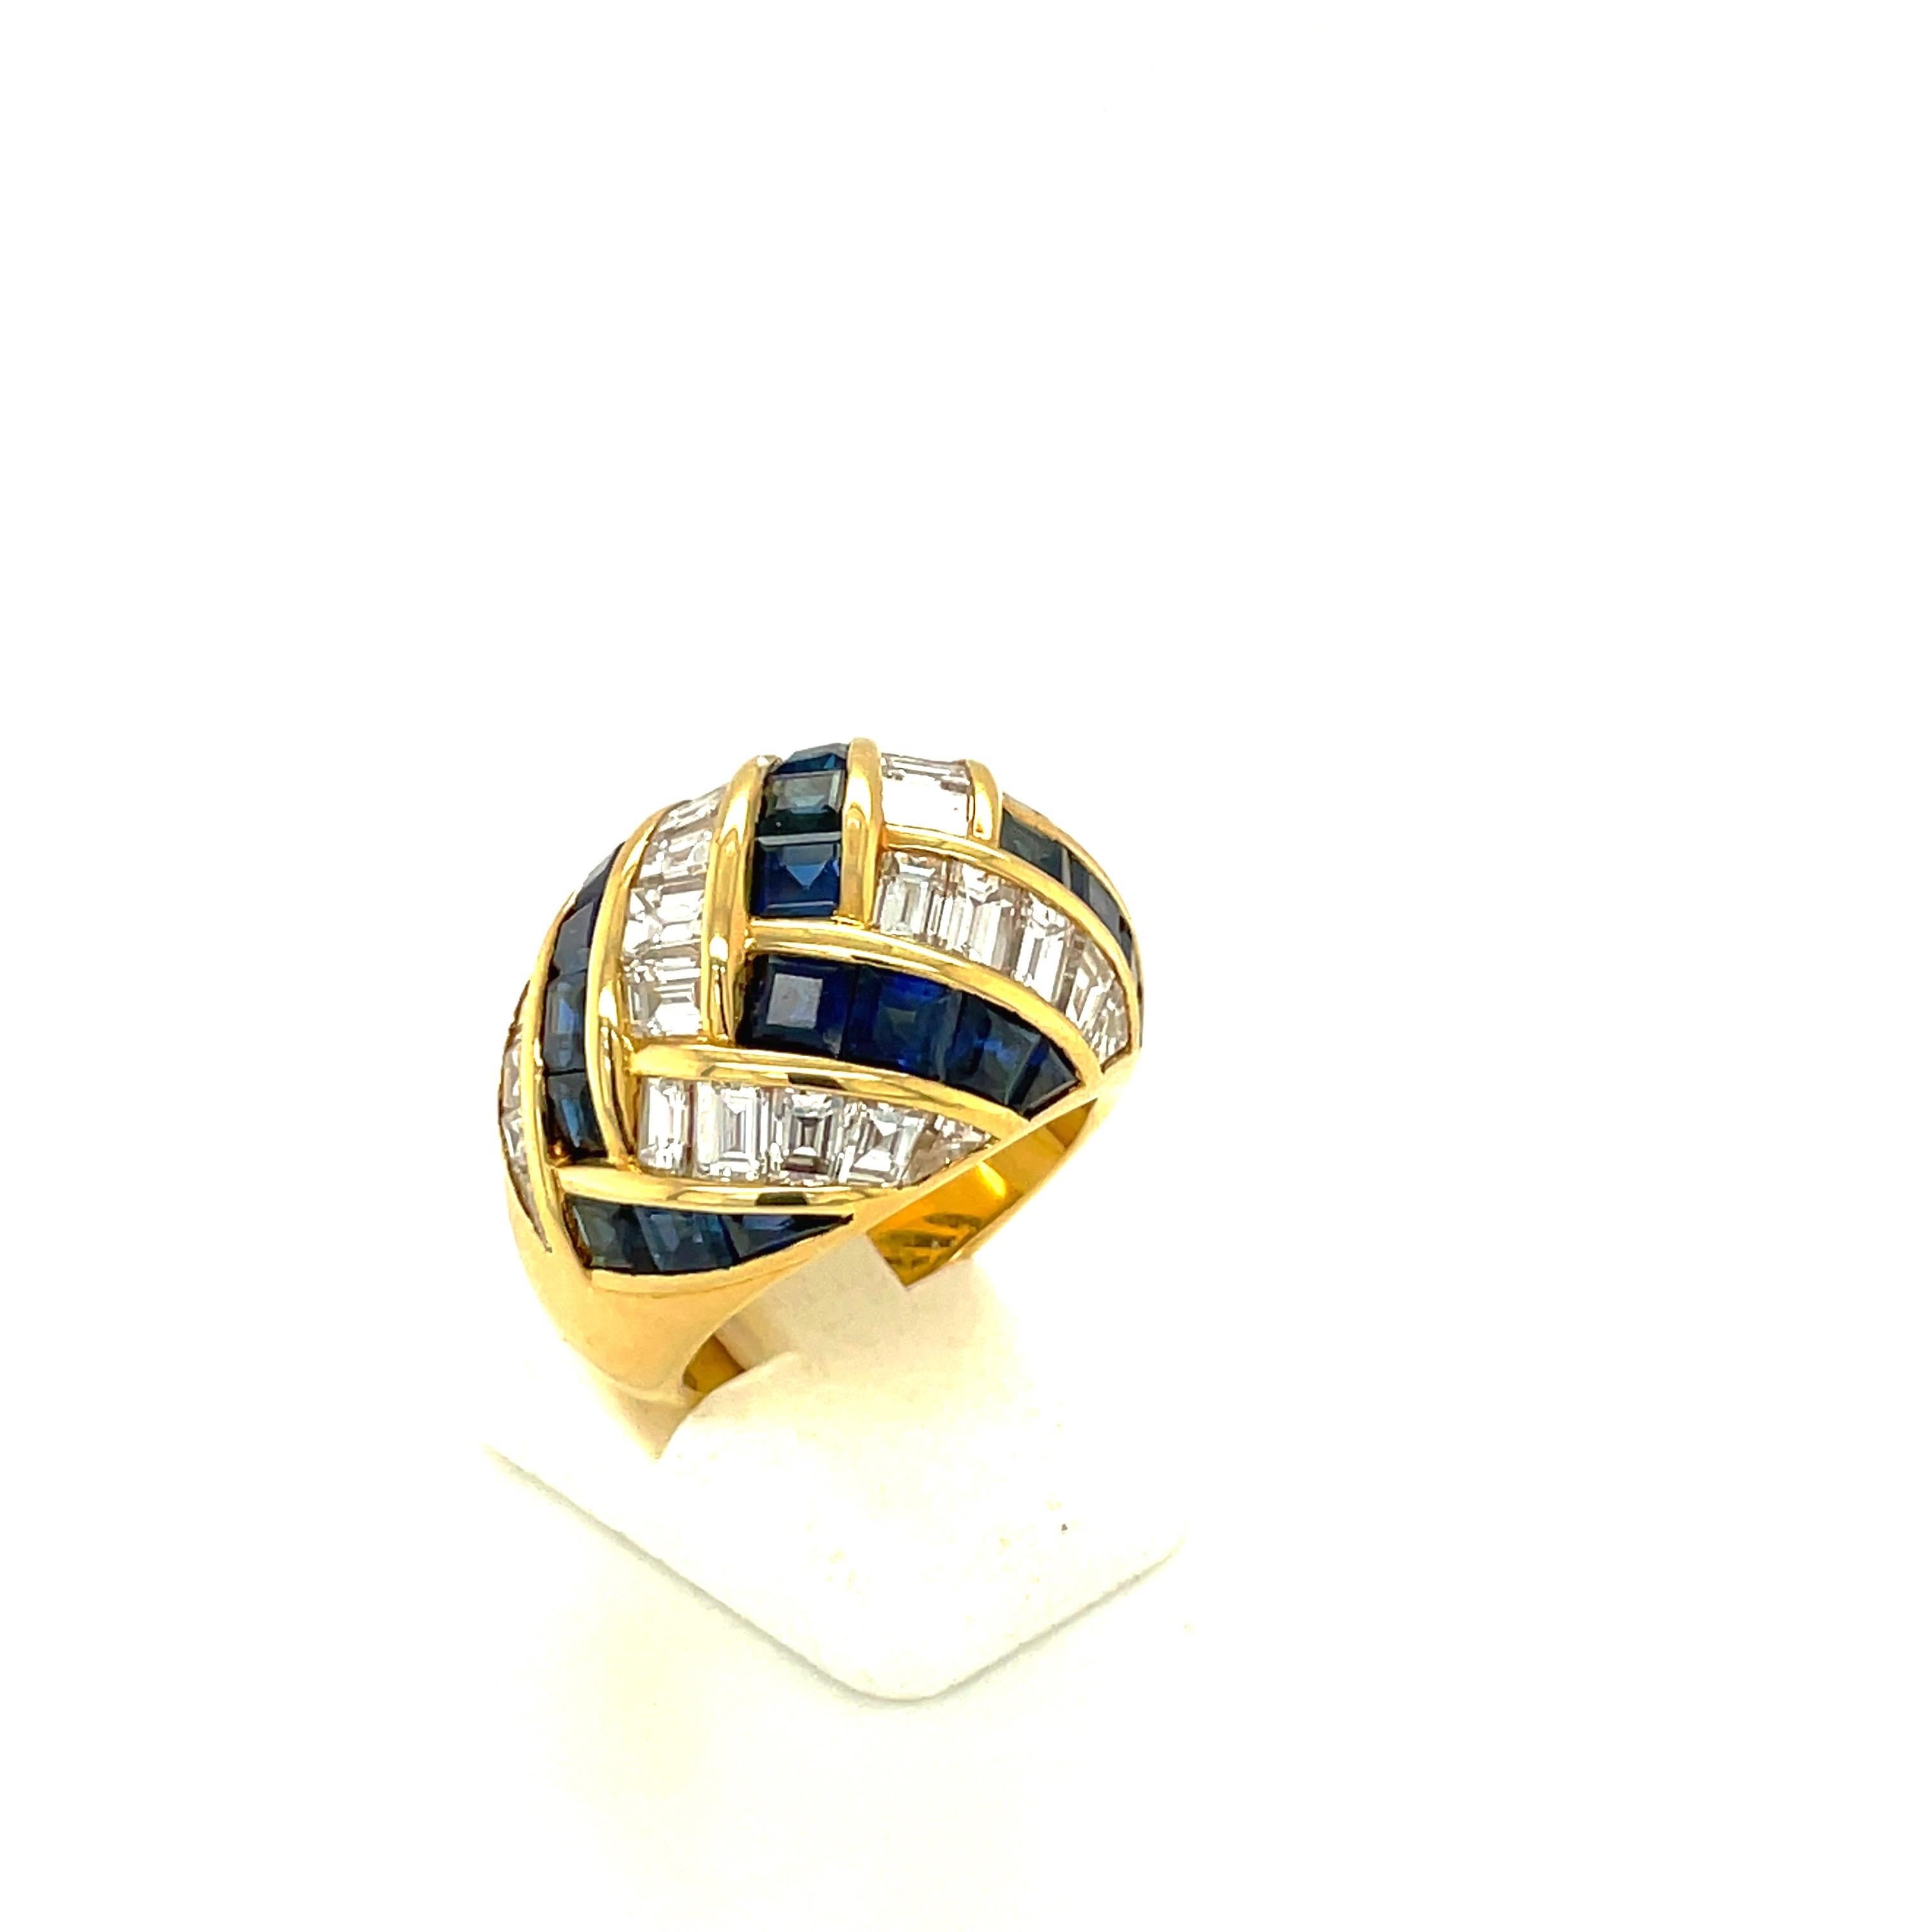 Dieser Ring wurde von dem berühmten italienischen Designer Guiseppe Picchiotti entworfen und ist ein perfektes Beispiel für seine sorgfältige Arbeit. Dieser Ring aus 18 Karat Gelbgold ist mit abwechselnd geschliffenen Diamanten im Baguetteschliff